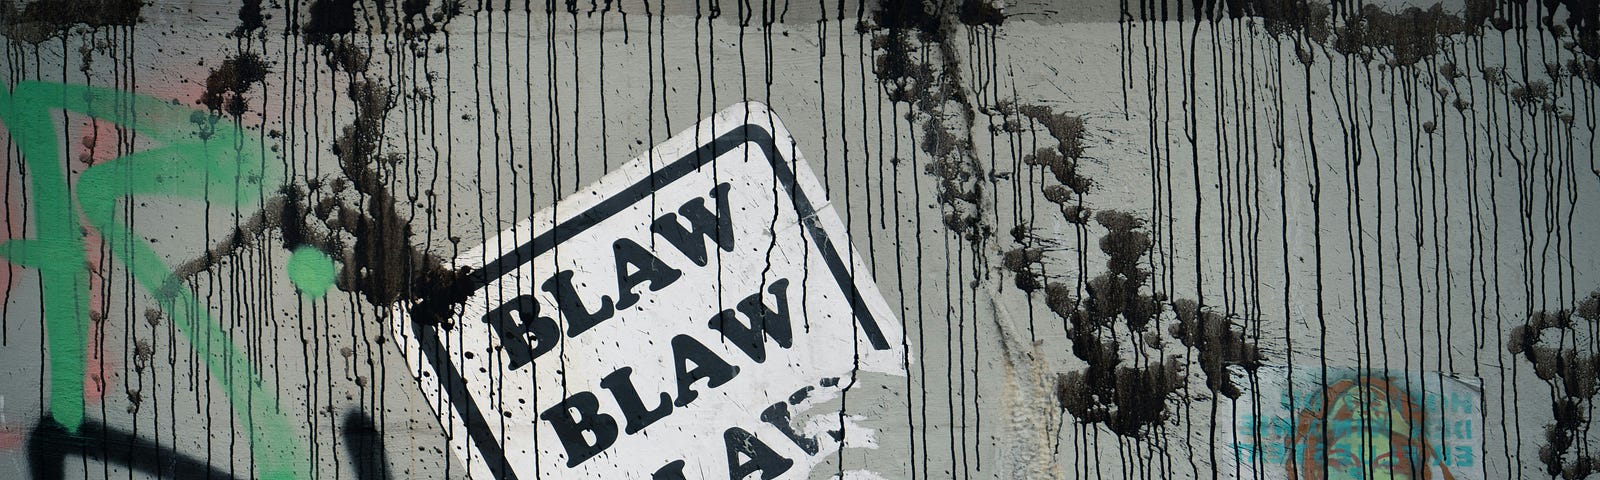 A sticker on a graffitti wall that says “blah, blah, blah”